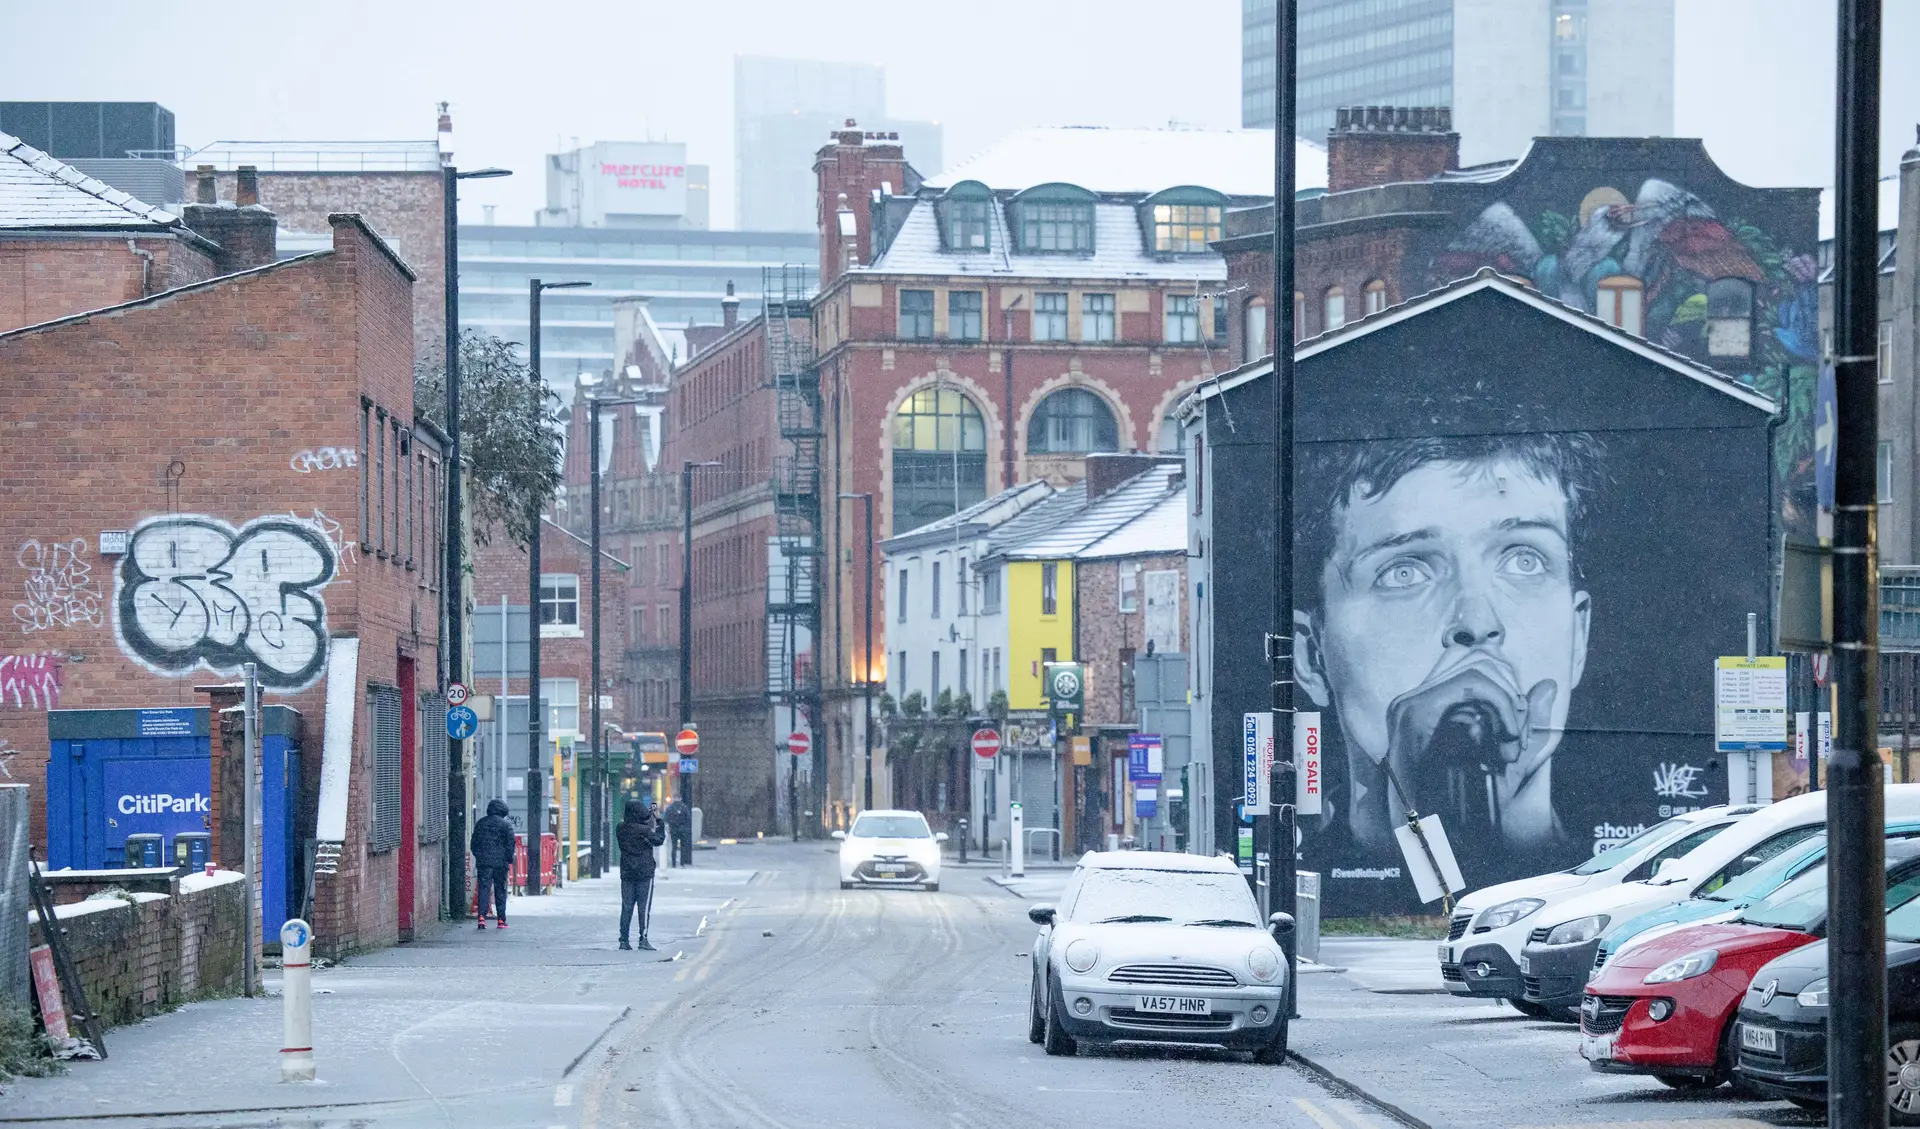 Mural de homenagem a Ian Curtis dos Joy Division destruído por publicidade a rapper de Manchester